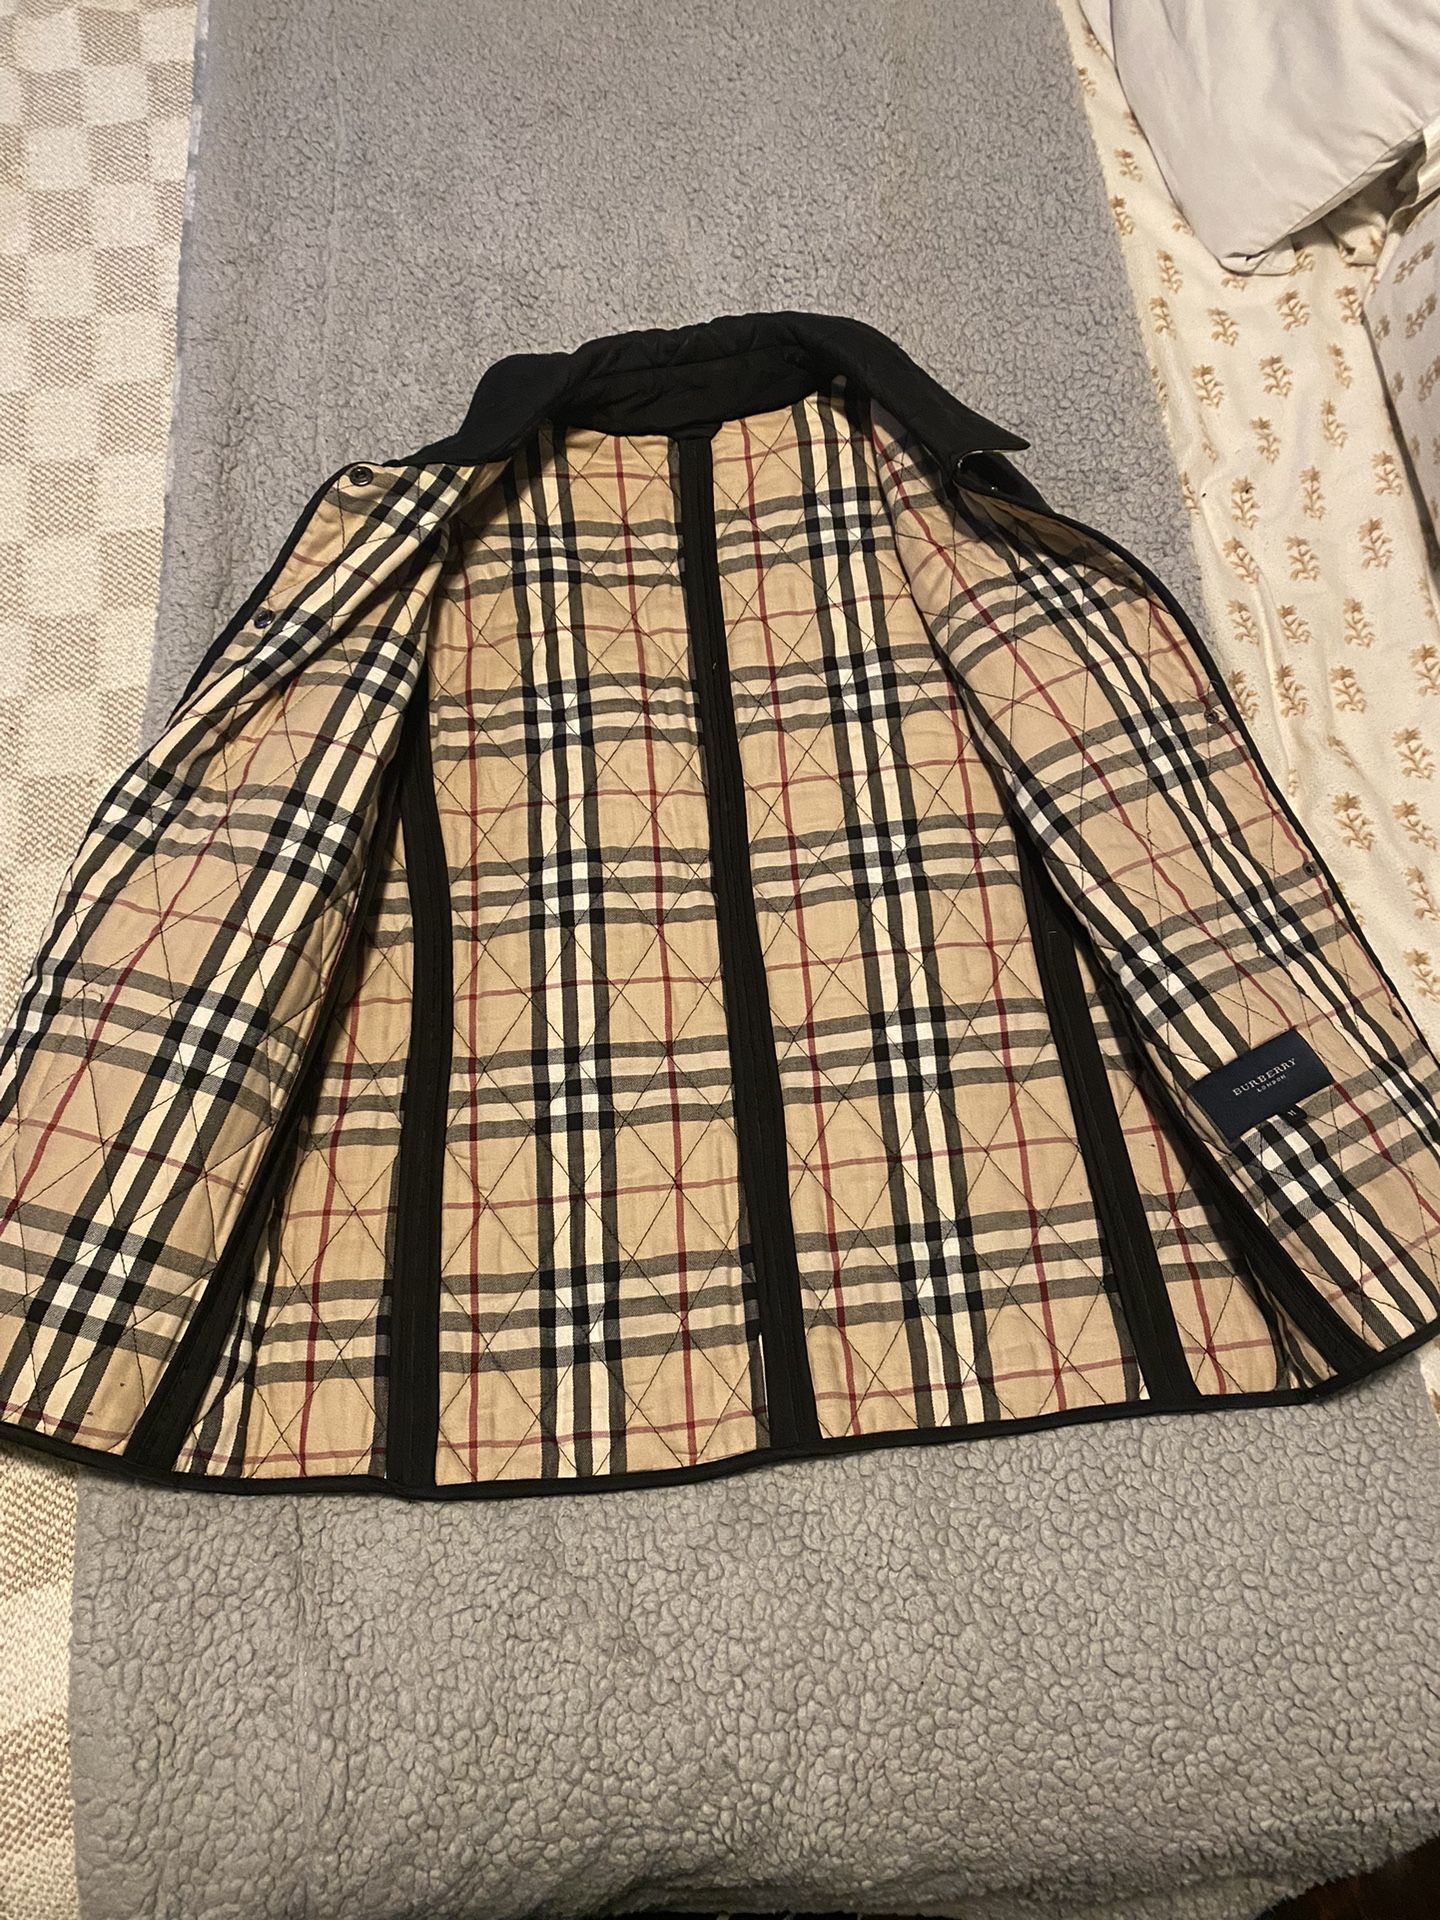 Burberry Jacket  Medium Size 